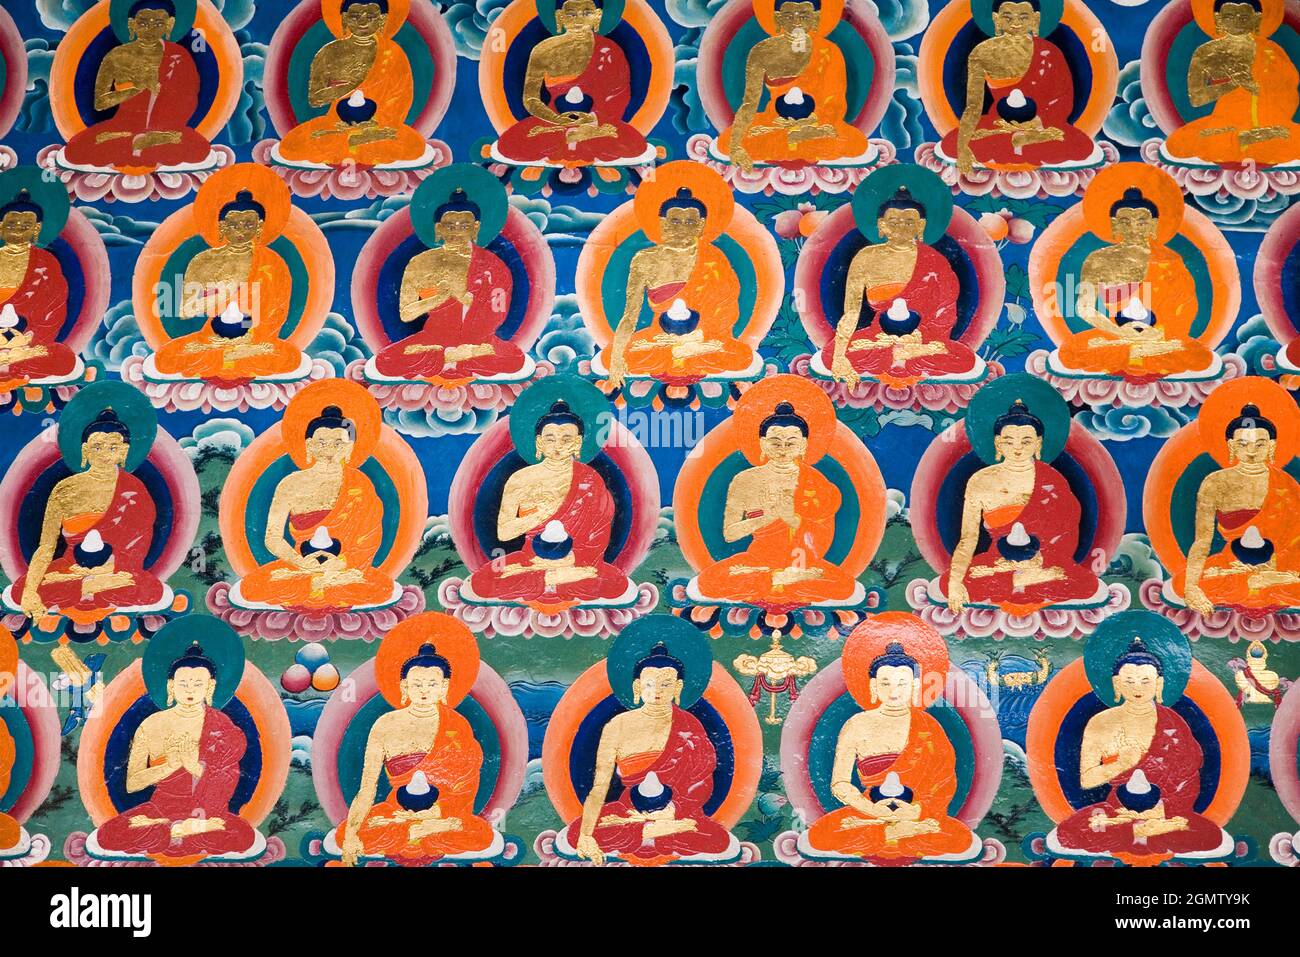 Tibet, Den 22. Oktober 2006. Das Kloster Tashilhunpo, das 1447 vom 1. Dalai Lama gegründet wurde, ist ein historisch und kulturell bedeutendes Kloster in Shigatse, T Stockfoto